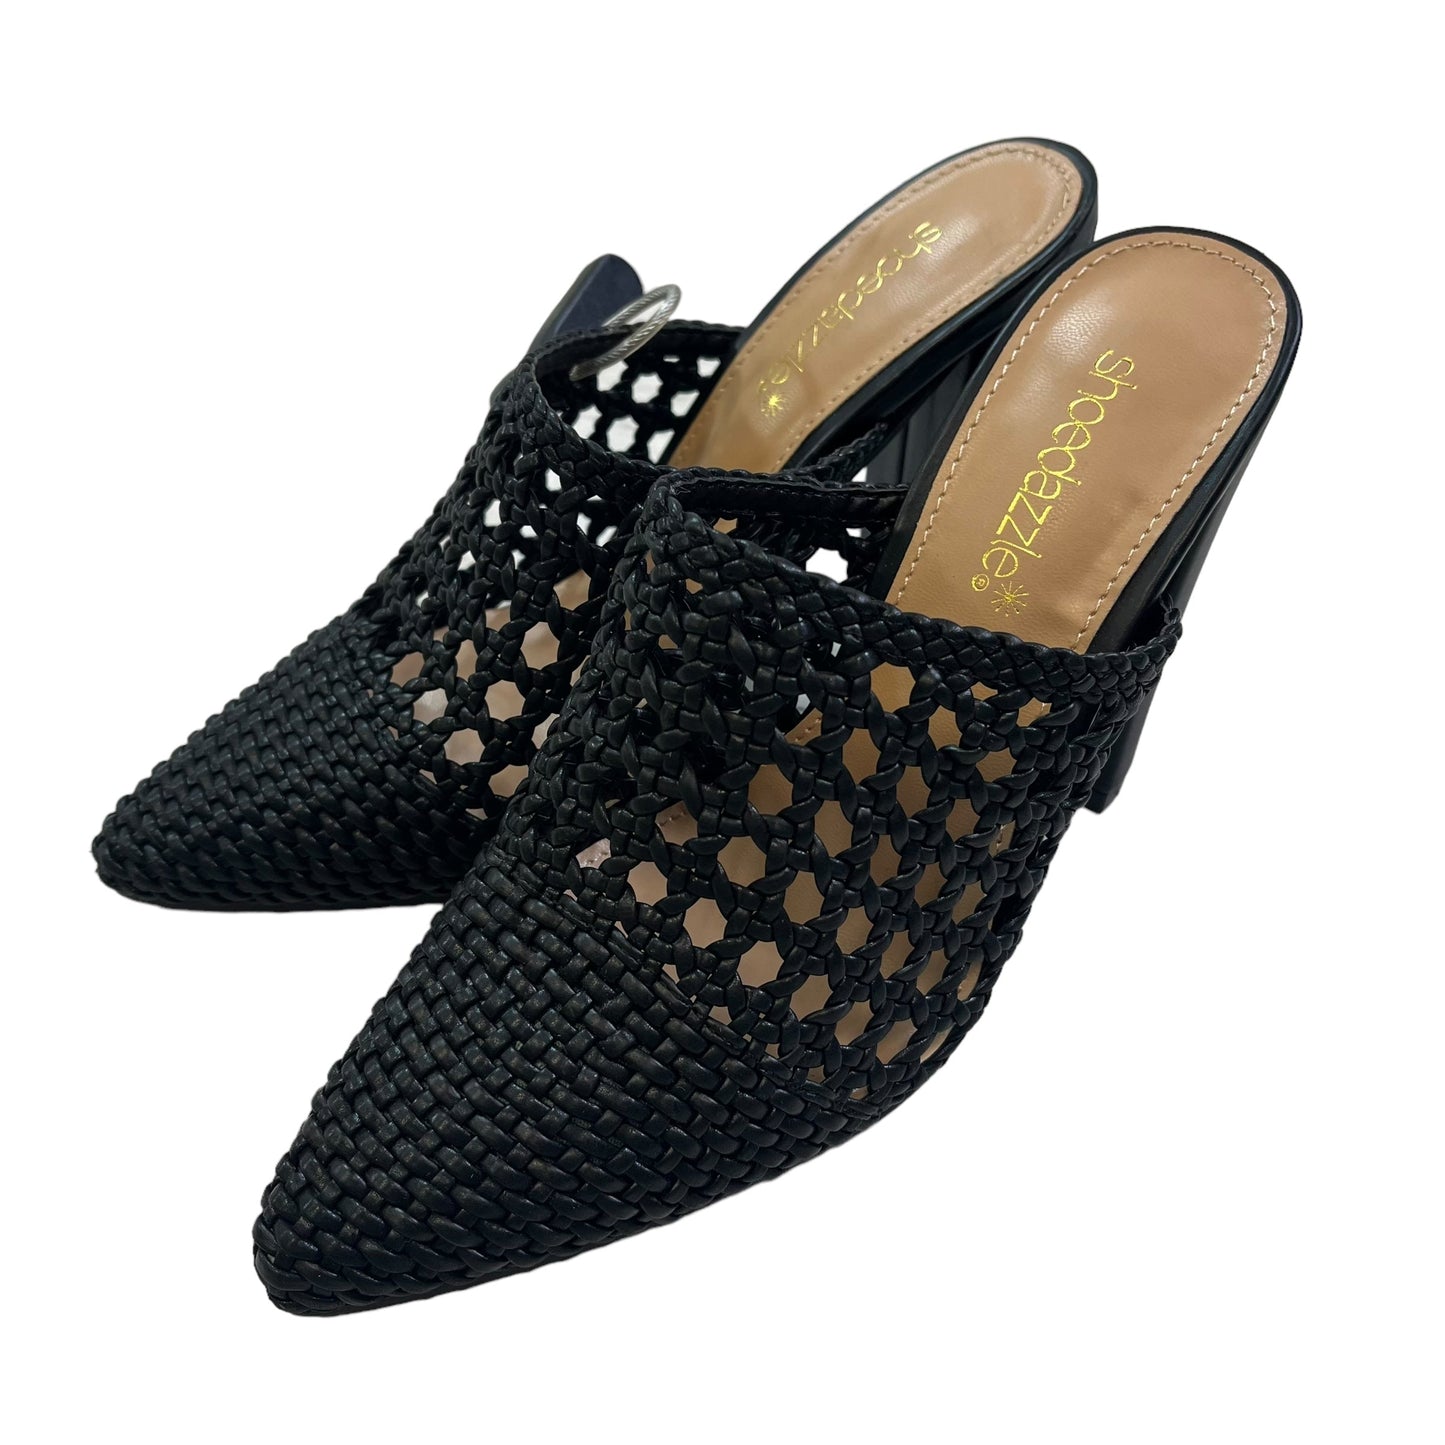 Black Shoes Heels Block Shoedazzle, Size 7